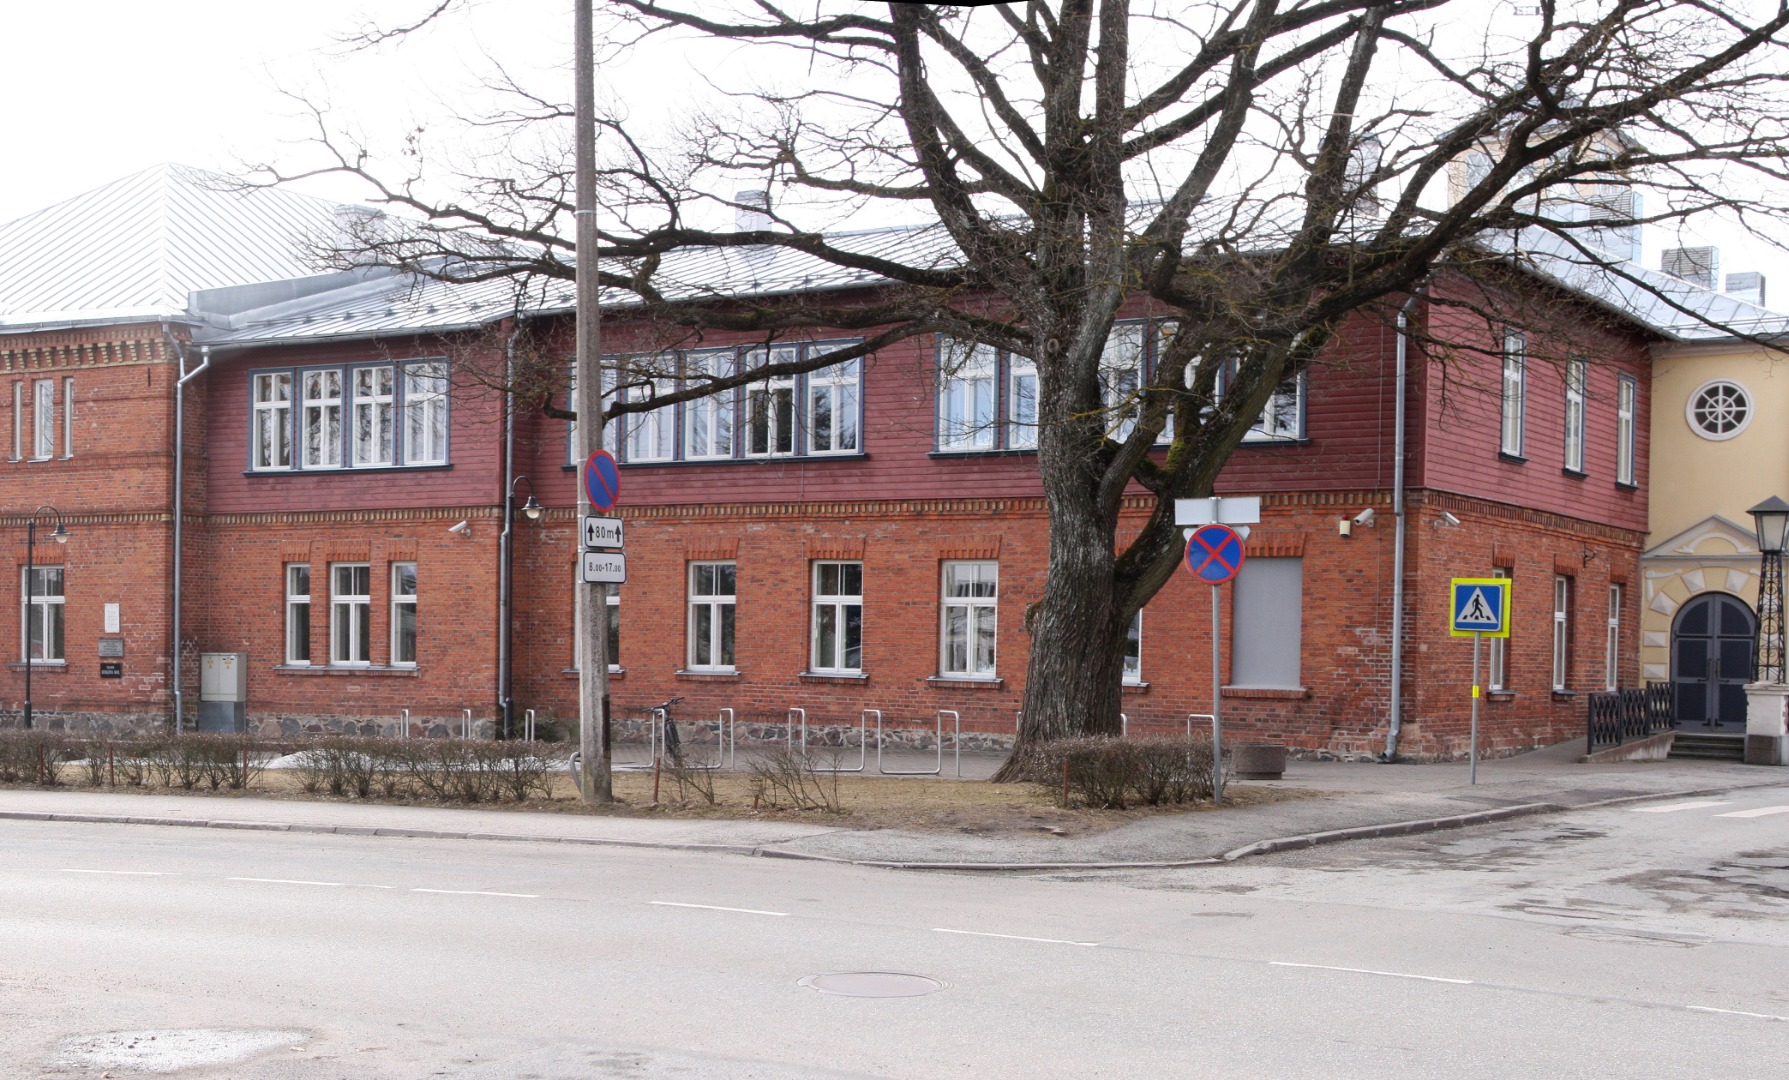 Wiljandi Estonian Society of Farmers and Gymnasium of Titus rephoto